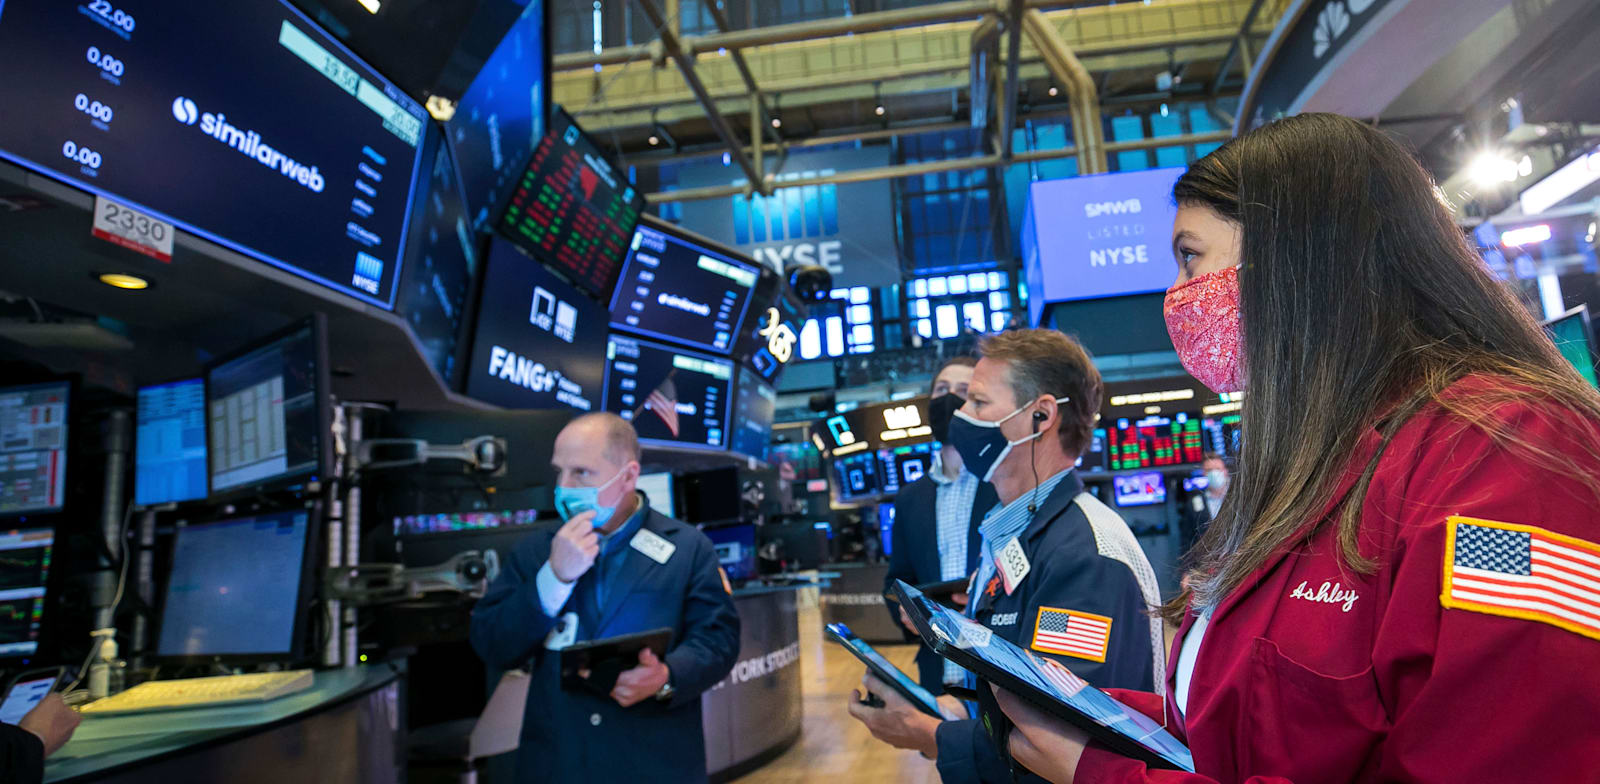 סוחרים בבורסת ניו יורק / צילום: Associated Press, Courtney Crow/New York Stock Exchange